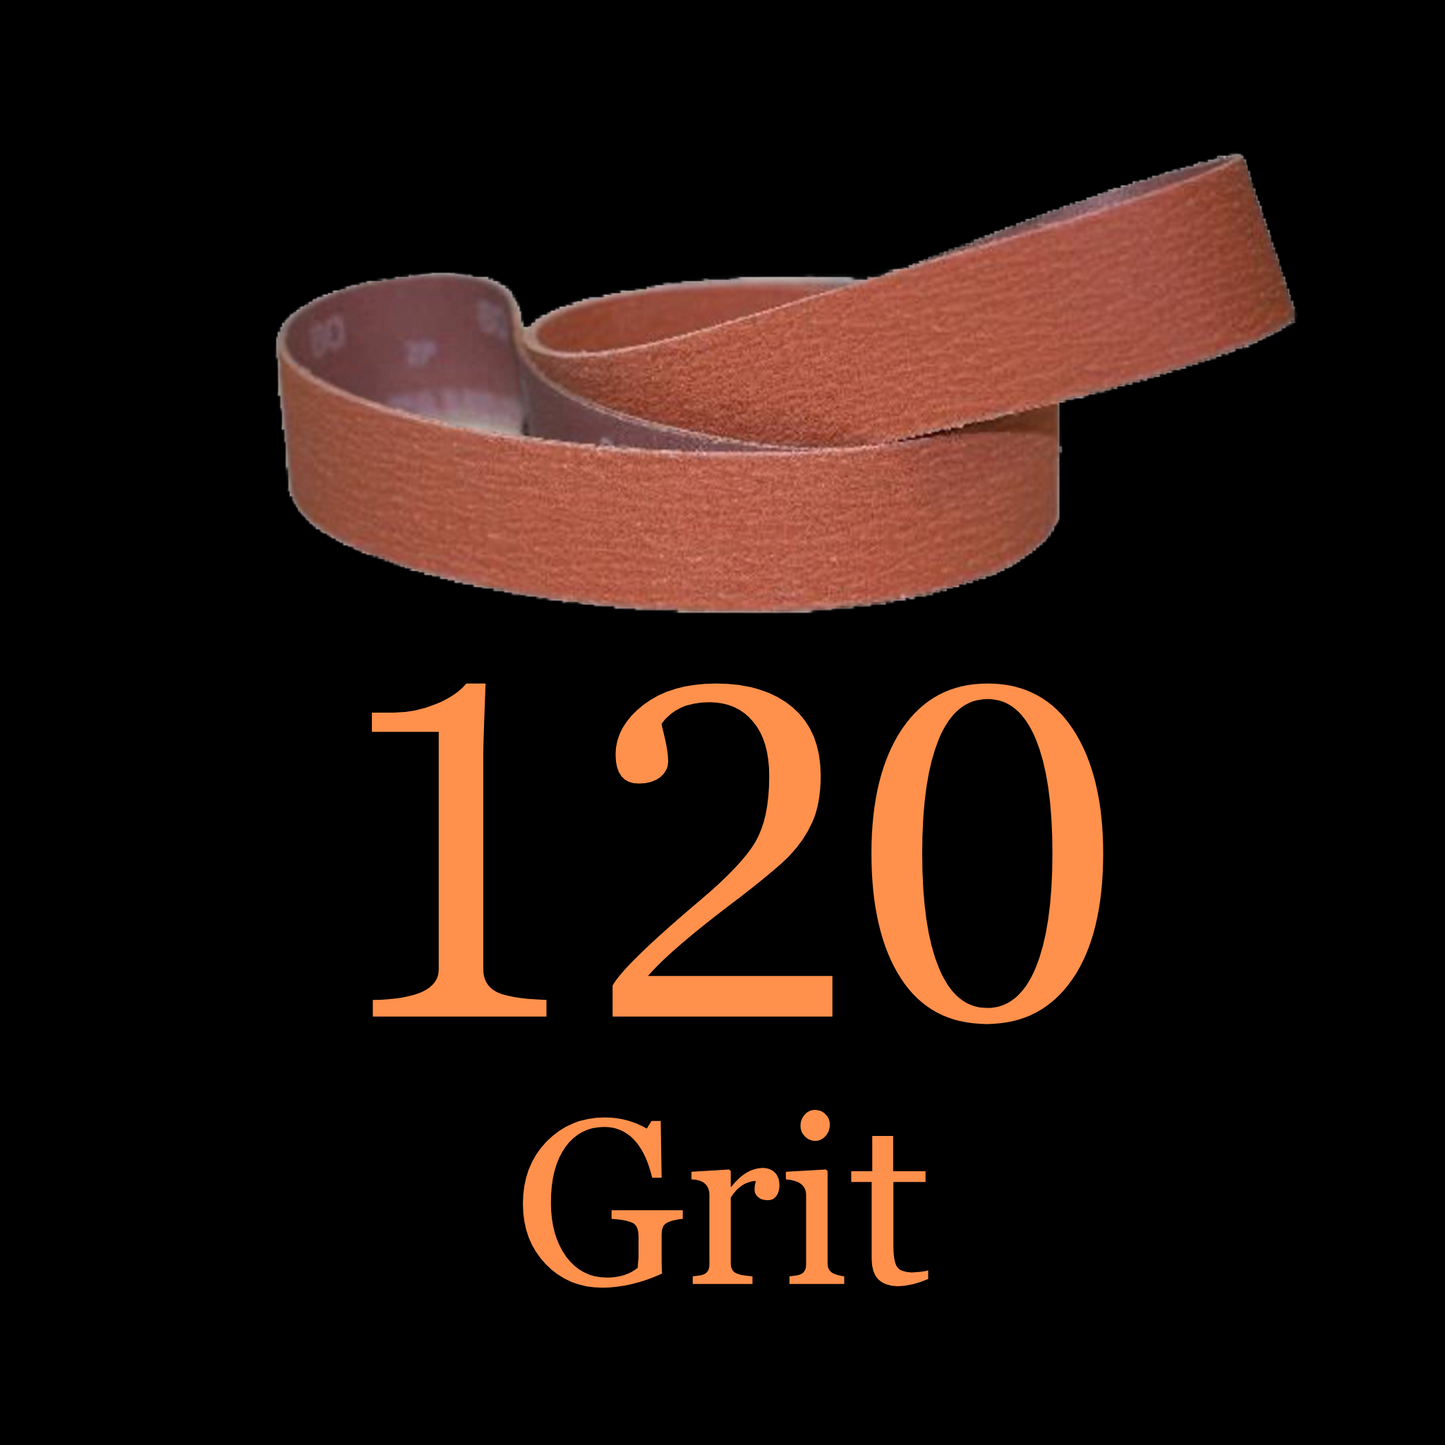 2” x 42” Ceramic Blaze Grinder Belt 120 Grit